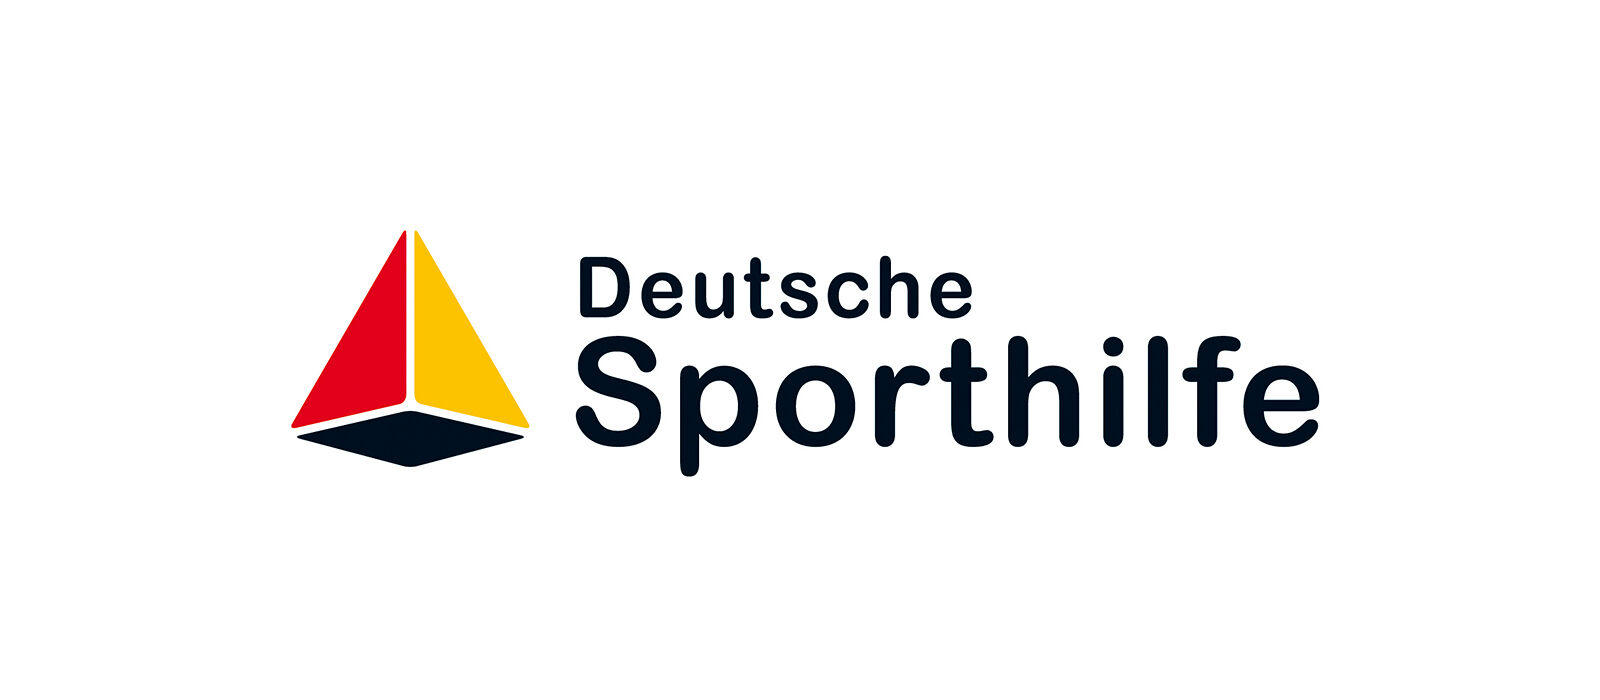 Deutsche Sporthilfe